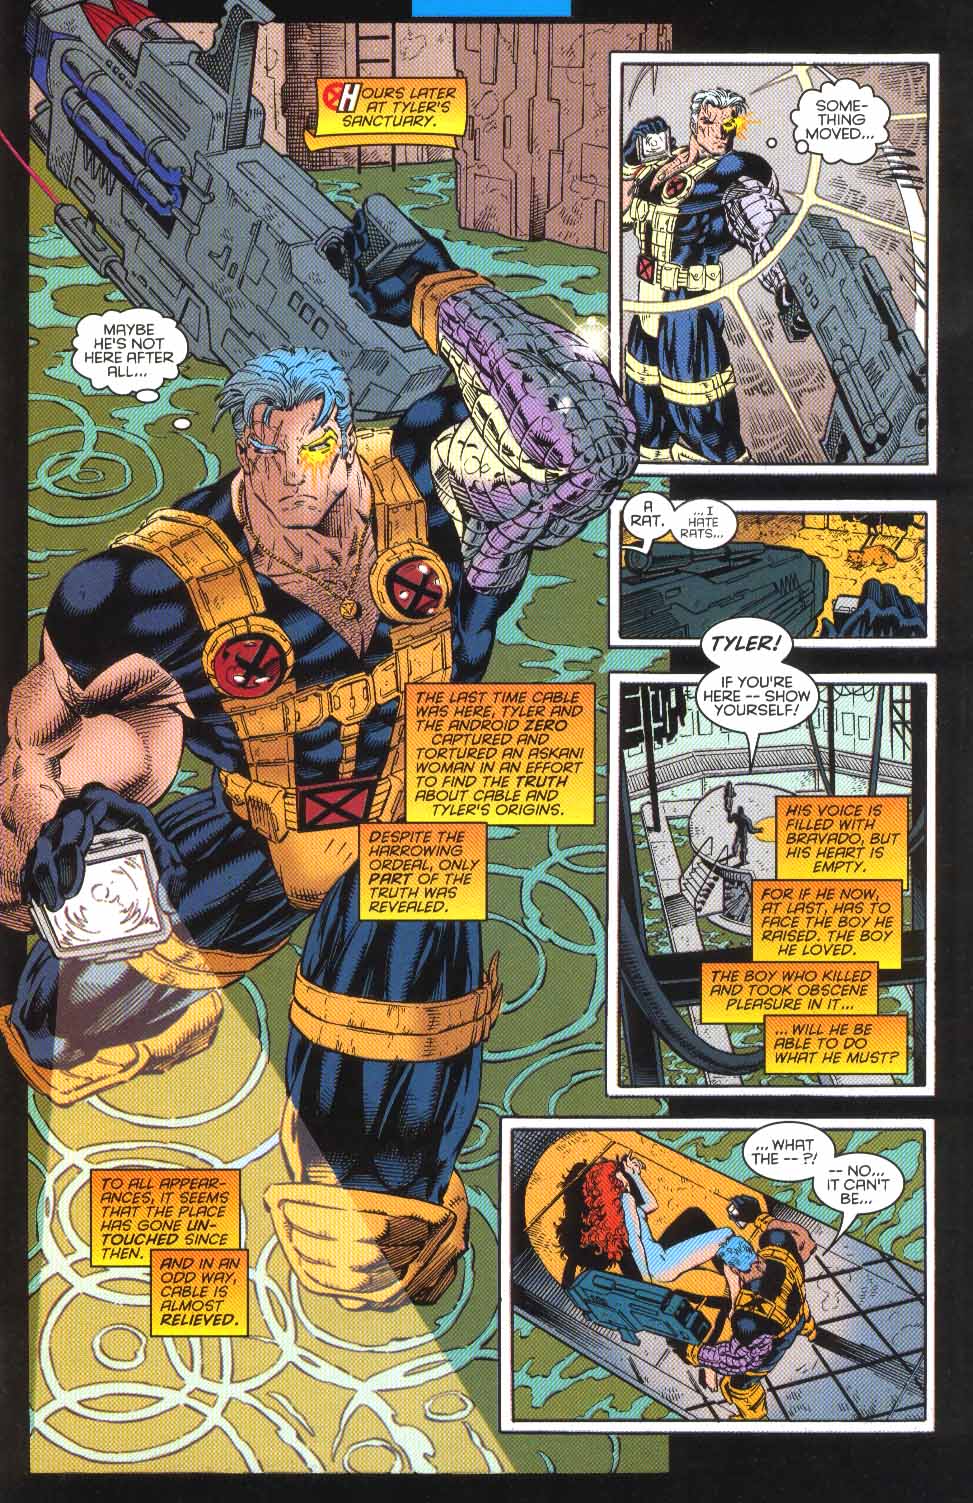 Câble tenant une arme à feu dans Marvel Comics.  Cette image fait partie d'un article sur 7 moments obscurs de l'histoire de Marvel qui ont été immortalisés dans les jeux vidéo.